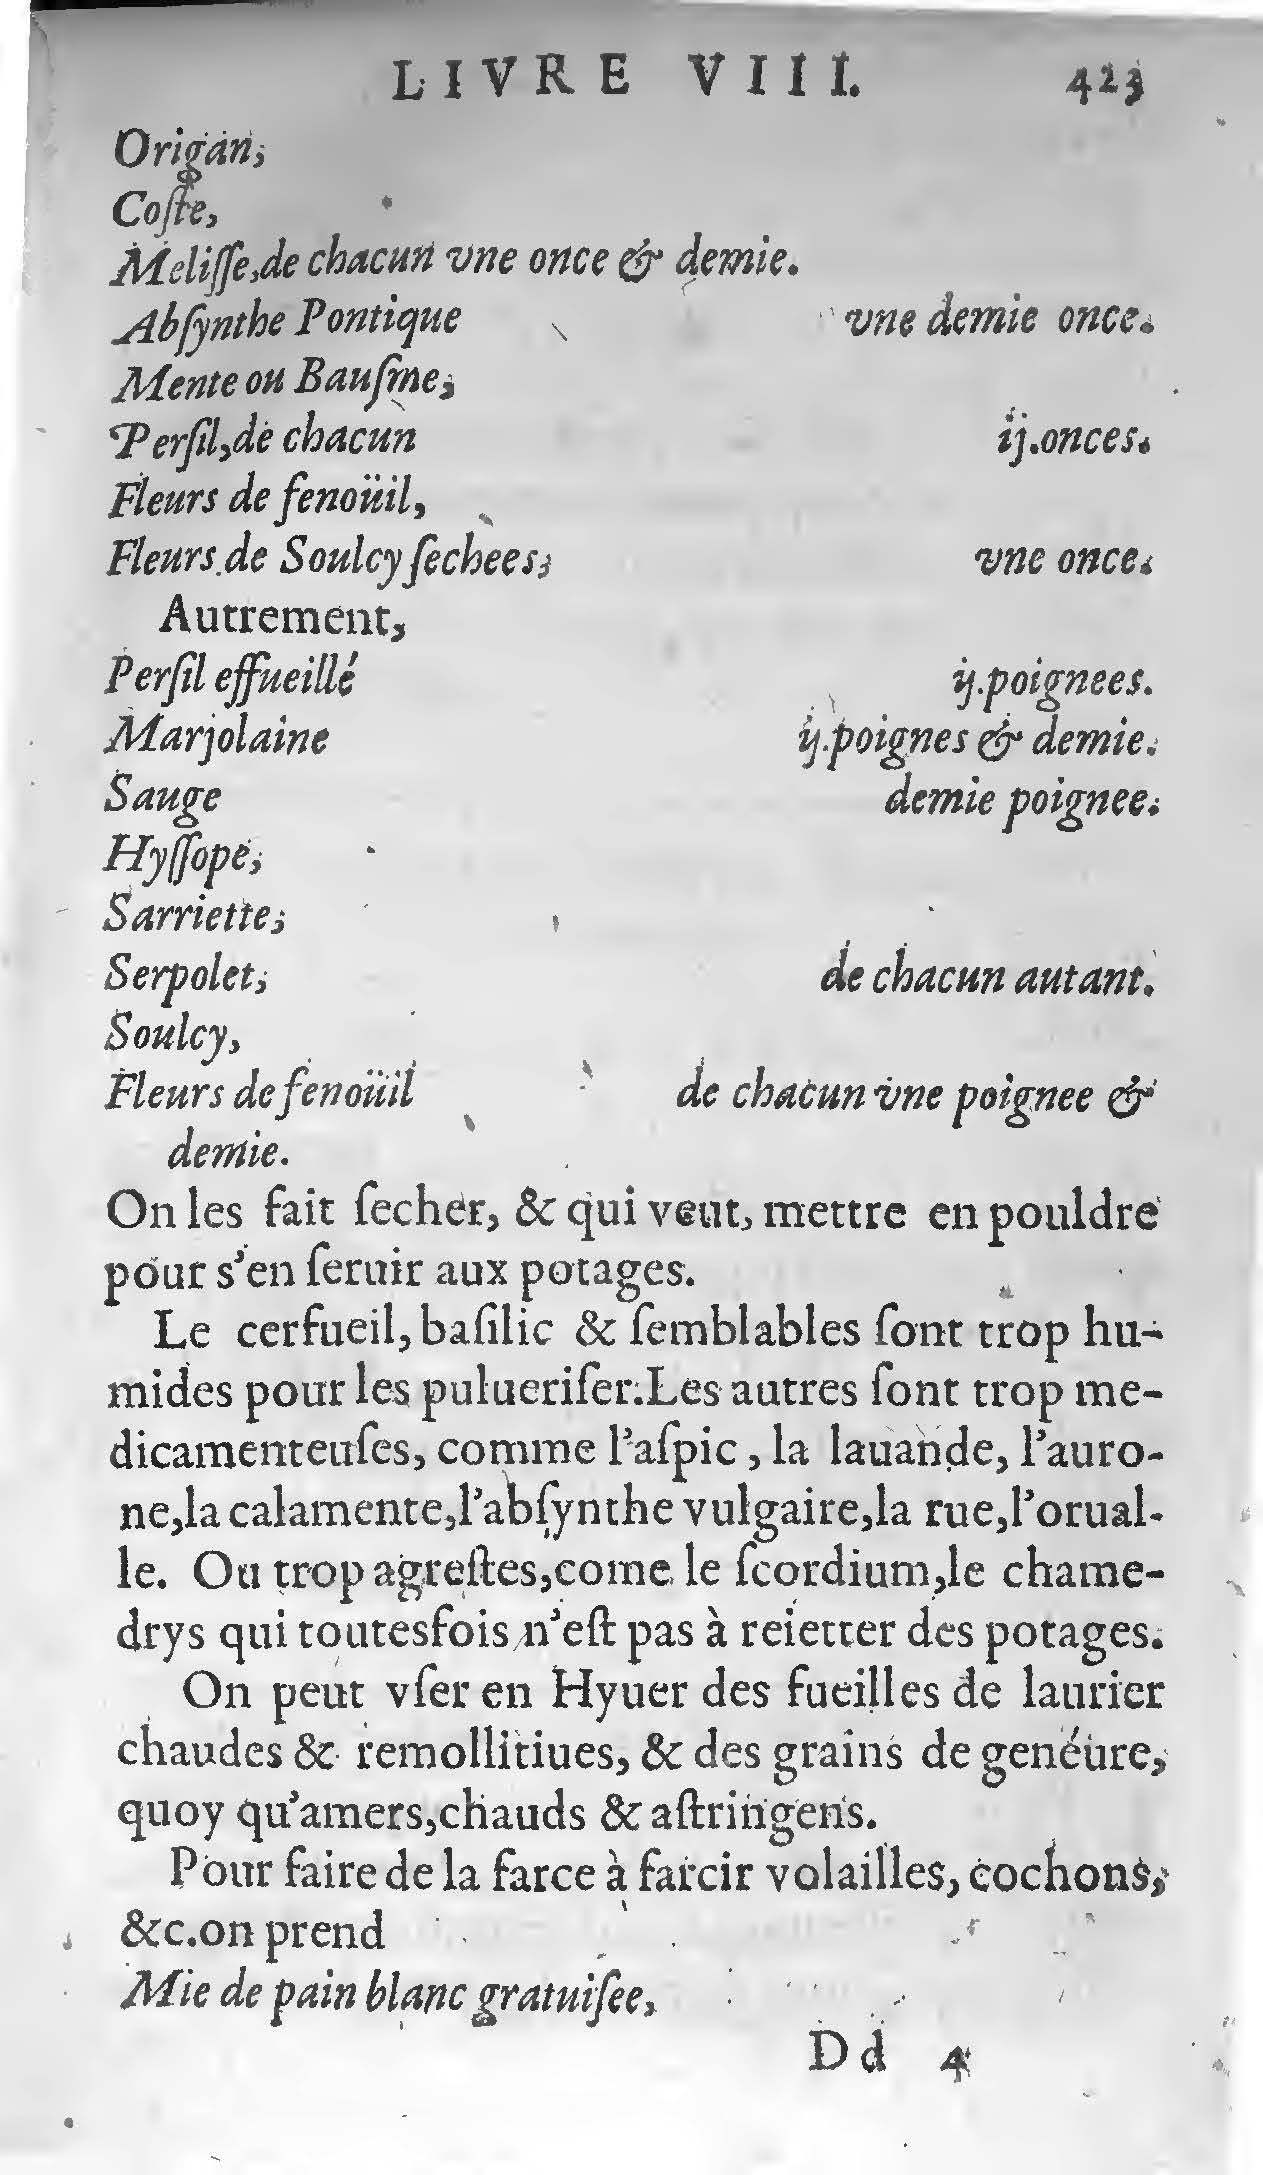 1607 Étienne Servain et Jean Antoine Huguetan - Trésor de santé ou ménage de la vie humaine - BIU Santé_Page_443.jpg